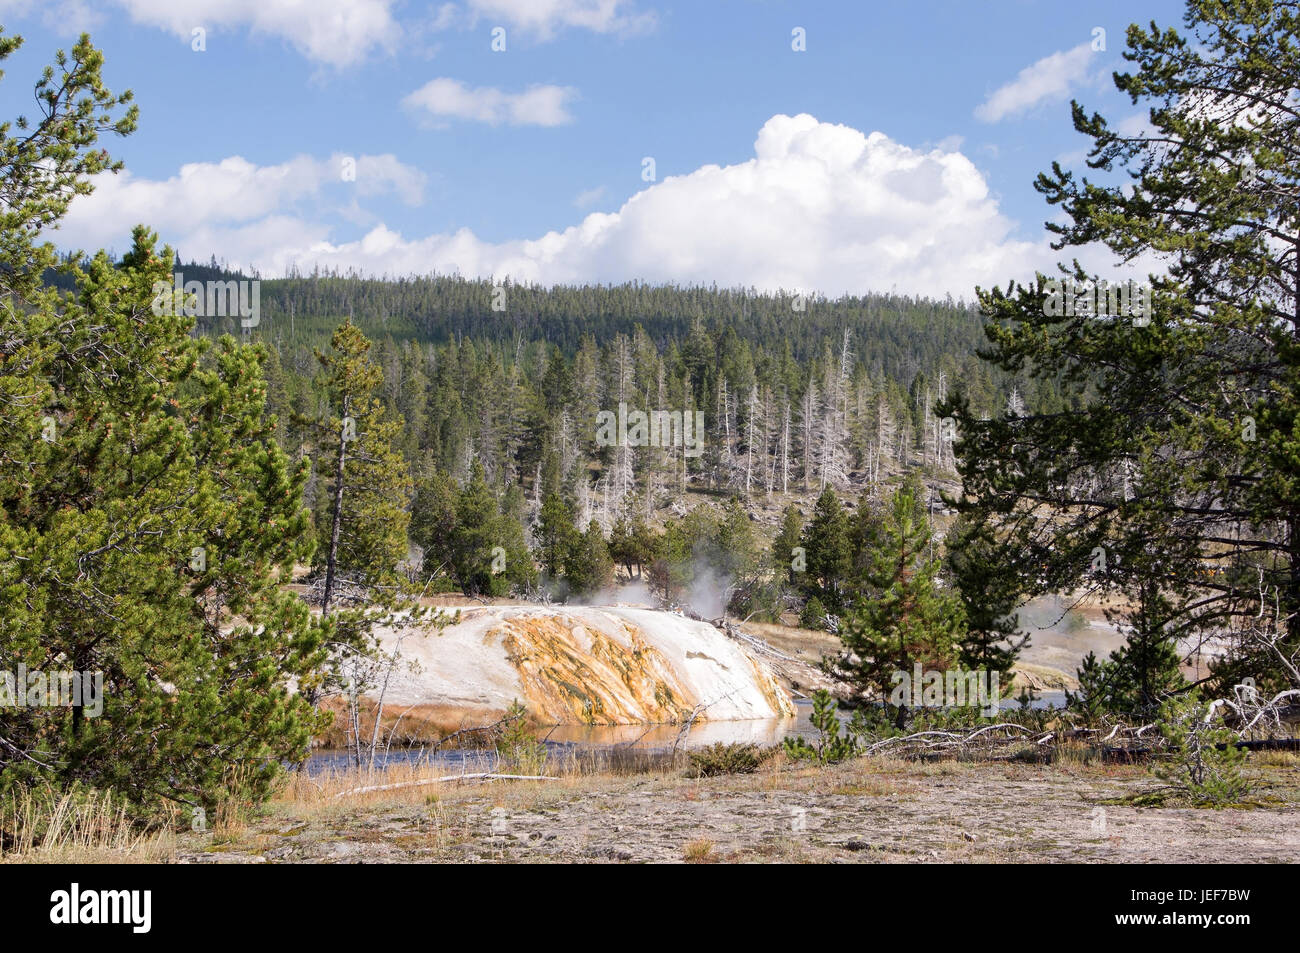 L'admission dans le parc national de Yellowstone, dans l'Utah, aux Etats-Unis, en octobre., Aufnahme im Nationalpark Yellowstone, USA, im Oktober. Banque D'Images